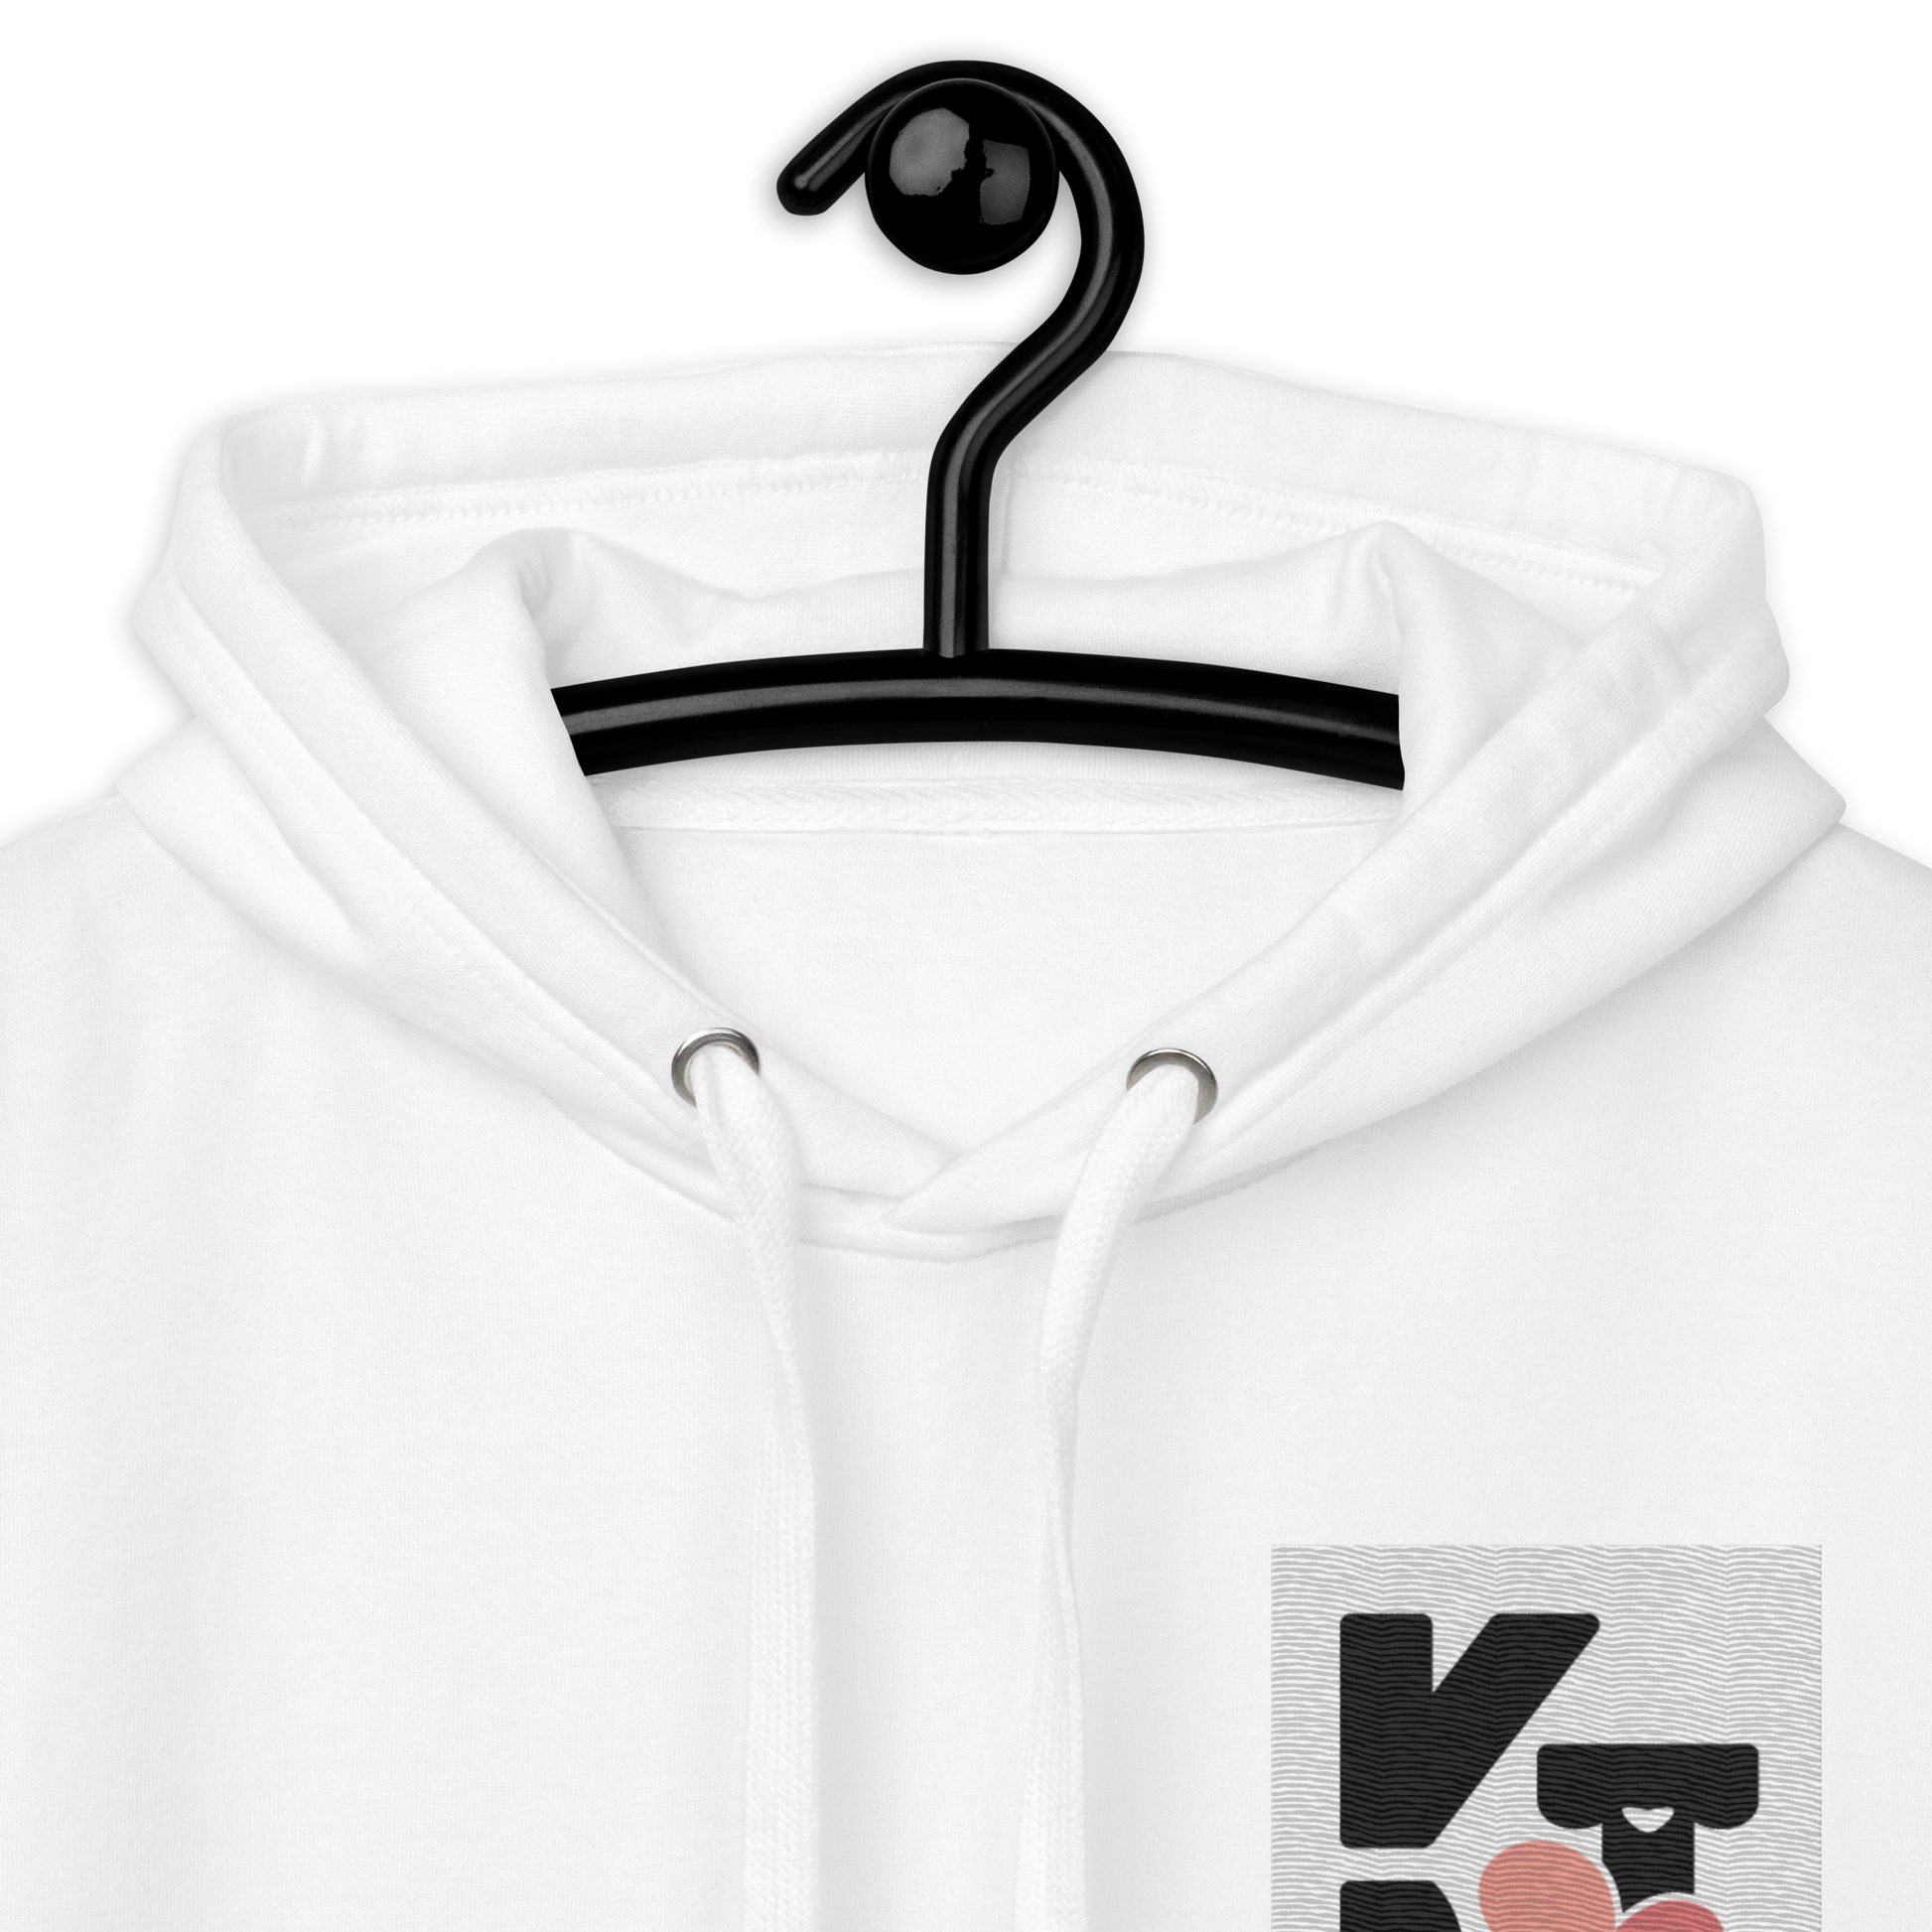 Weißer Unisex-Kapuzenpullover mit Klexgetier-Logo auf der Brust, in der Nahaufnahme präsentiert auf einem schwarzen Kleiderbügel.